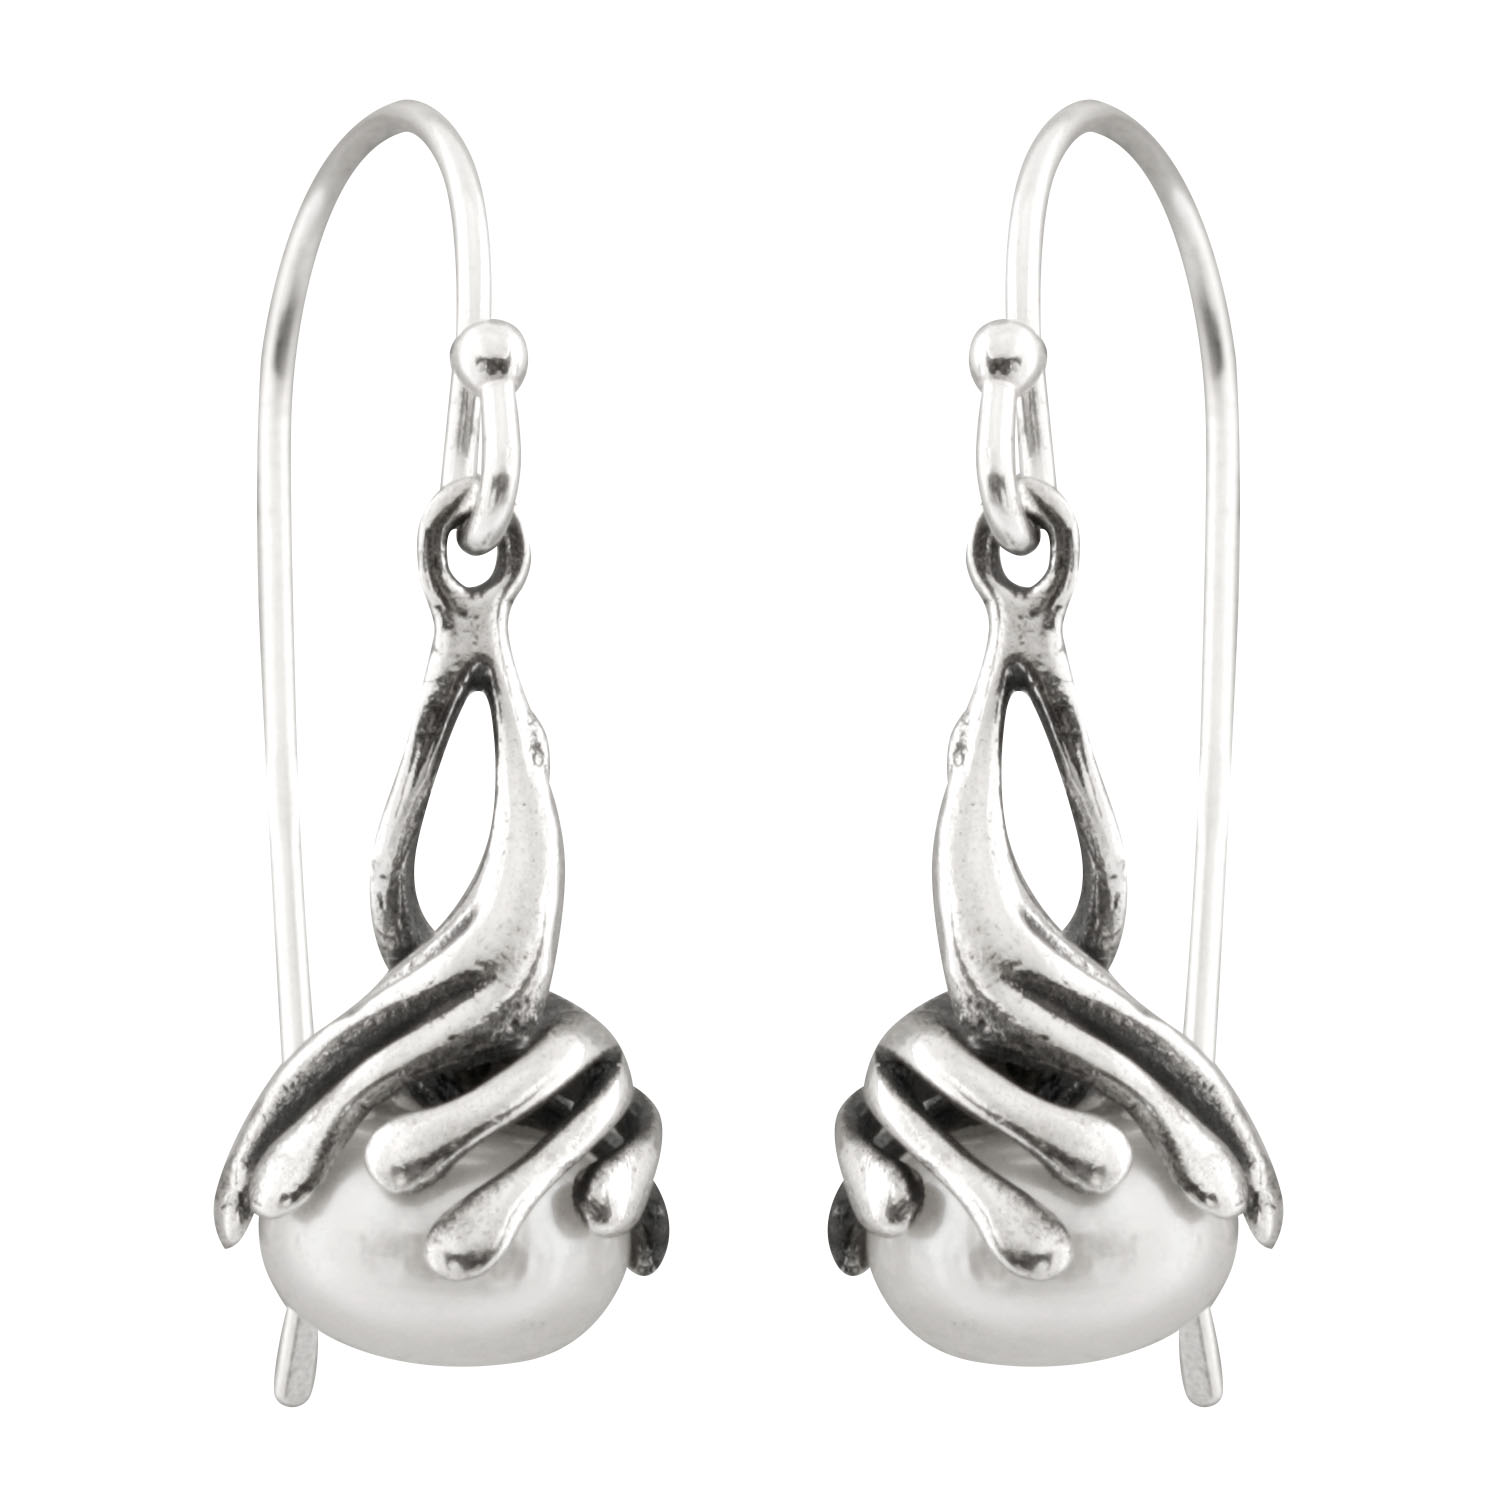 New silver earrings